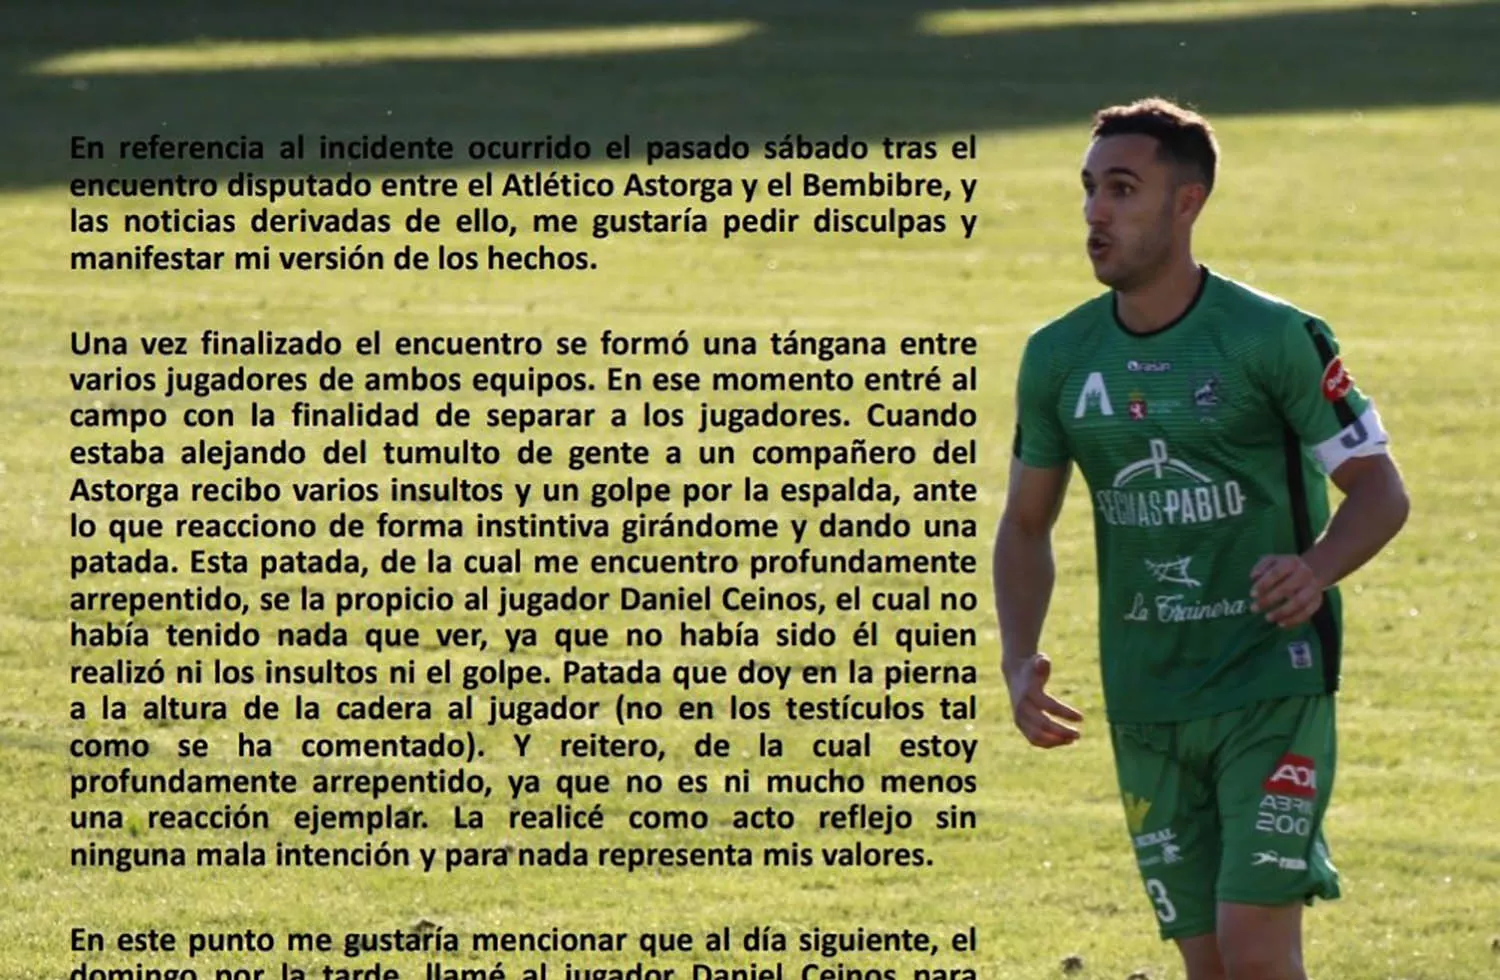 El jugador de Atlético Astorga Diego Herrador se disculpa por el incidente tras el partido contra el Atlético Bembibre